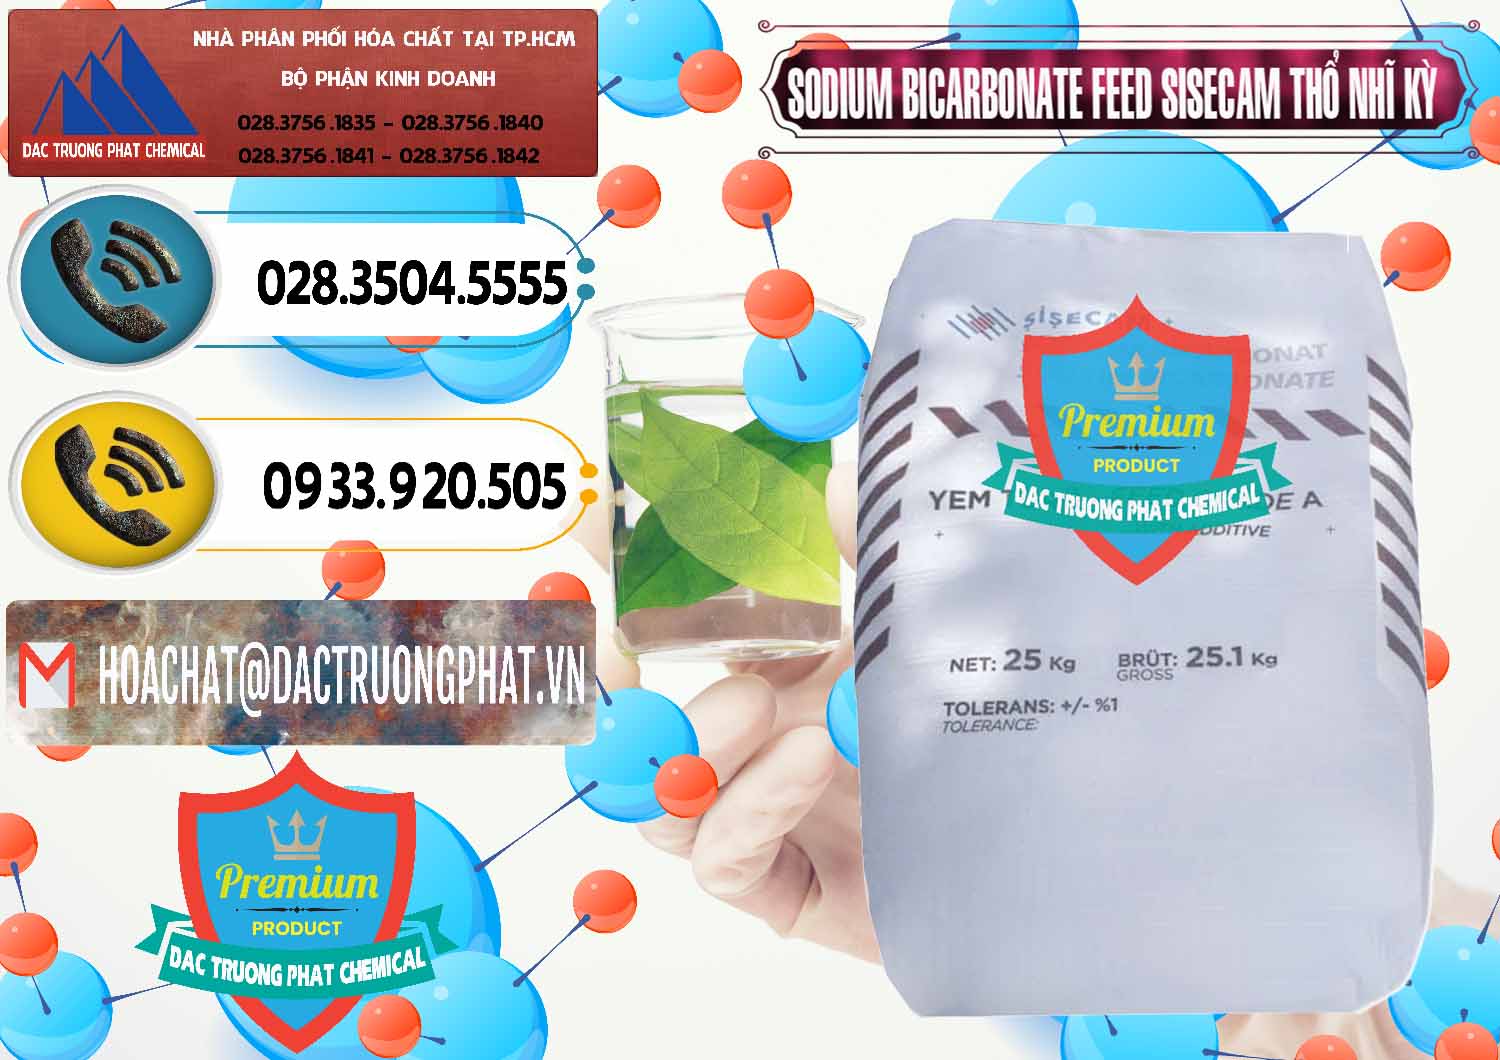 Công ty chuyên bán & cung cấp Sodium Bicarbonate – Bicar NaHCO3 Feed Grade Thổ Nhĩ Kỳ Turkey - 0265 - Cty chuyên kinh doanh và cung cấp hóa chất tại TP.HCM - hoachatdetnhuom.vn